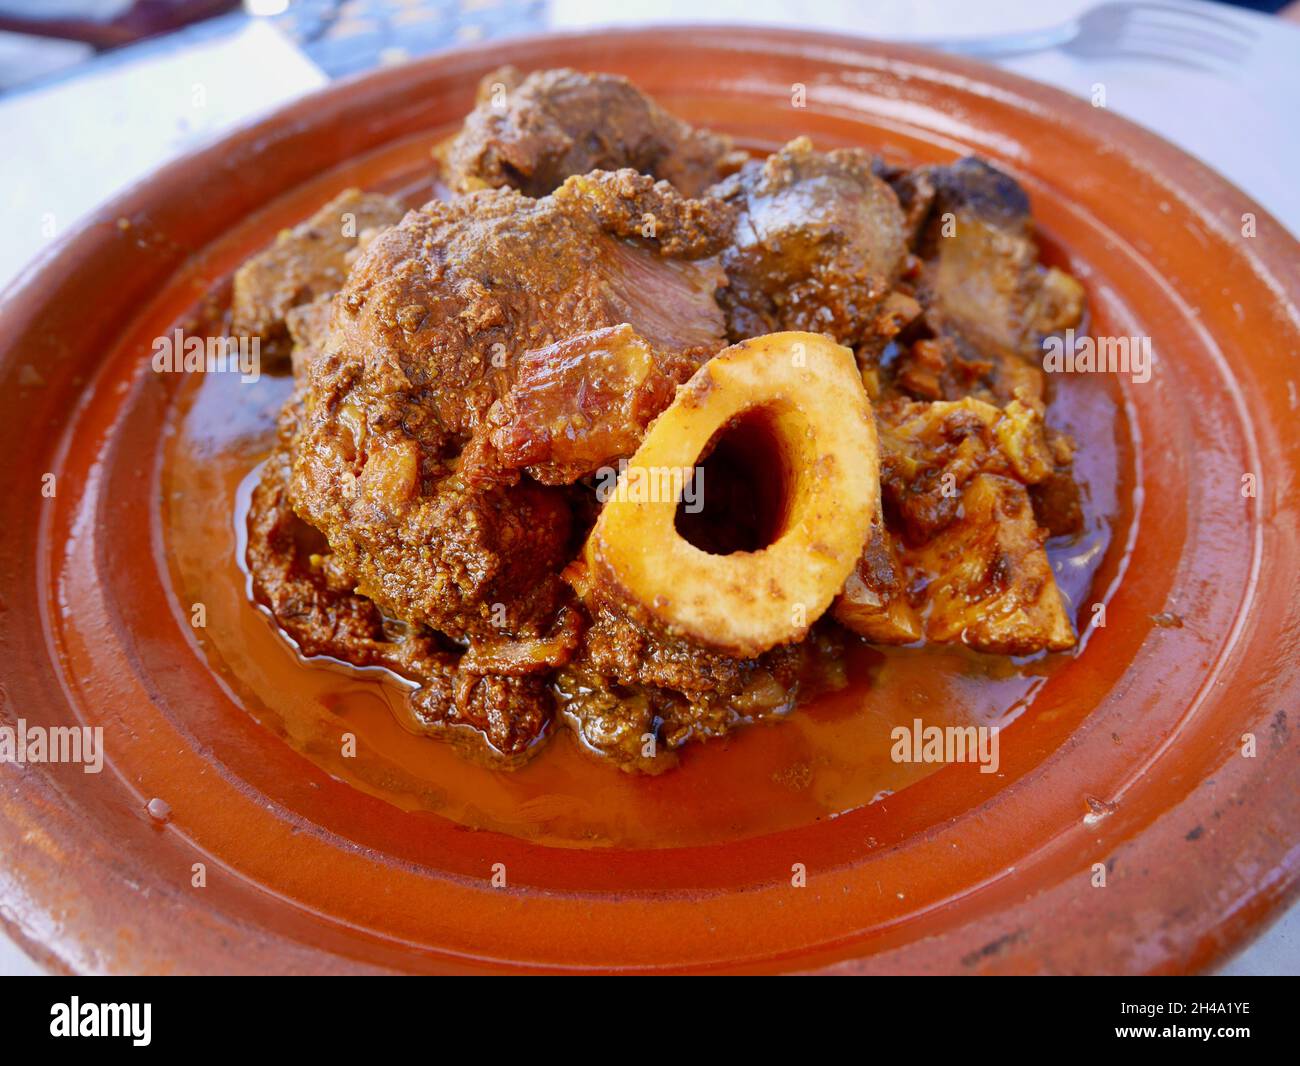 Nahaufnahme von Tangia, Tanjia, einem lokalen Gericht aus Marrakesch und dem Traum von Fleischliebhabern. Gebratenes Lamm, das in Tontöpfen im Hammam Ofen gekocht wird. Hochwertige Fotos Stockfoto